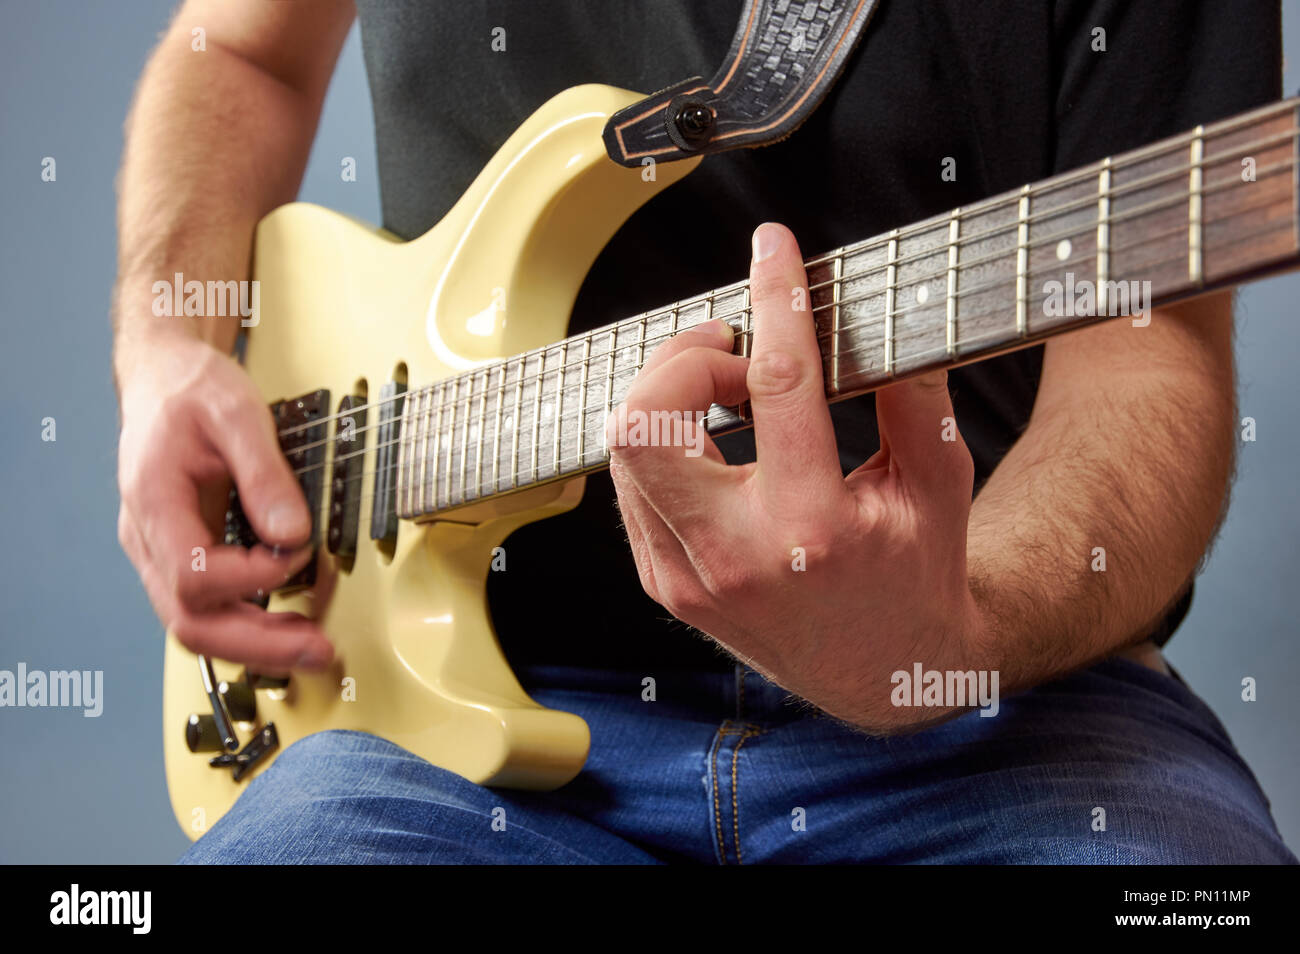 Un Uomo in camicia nera e jeans suonando una chitarra elettrica. Dita dettaglio, sfondo blu. Foto Stock